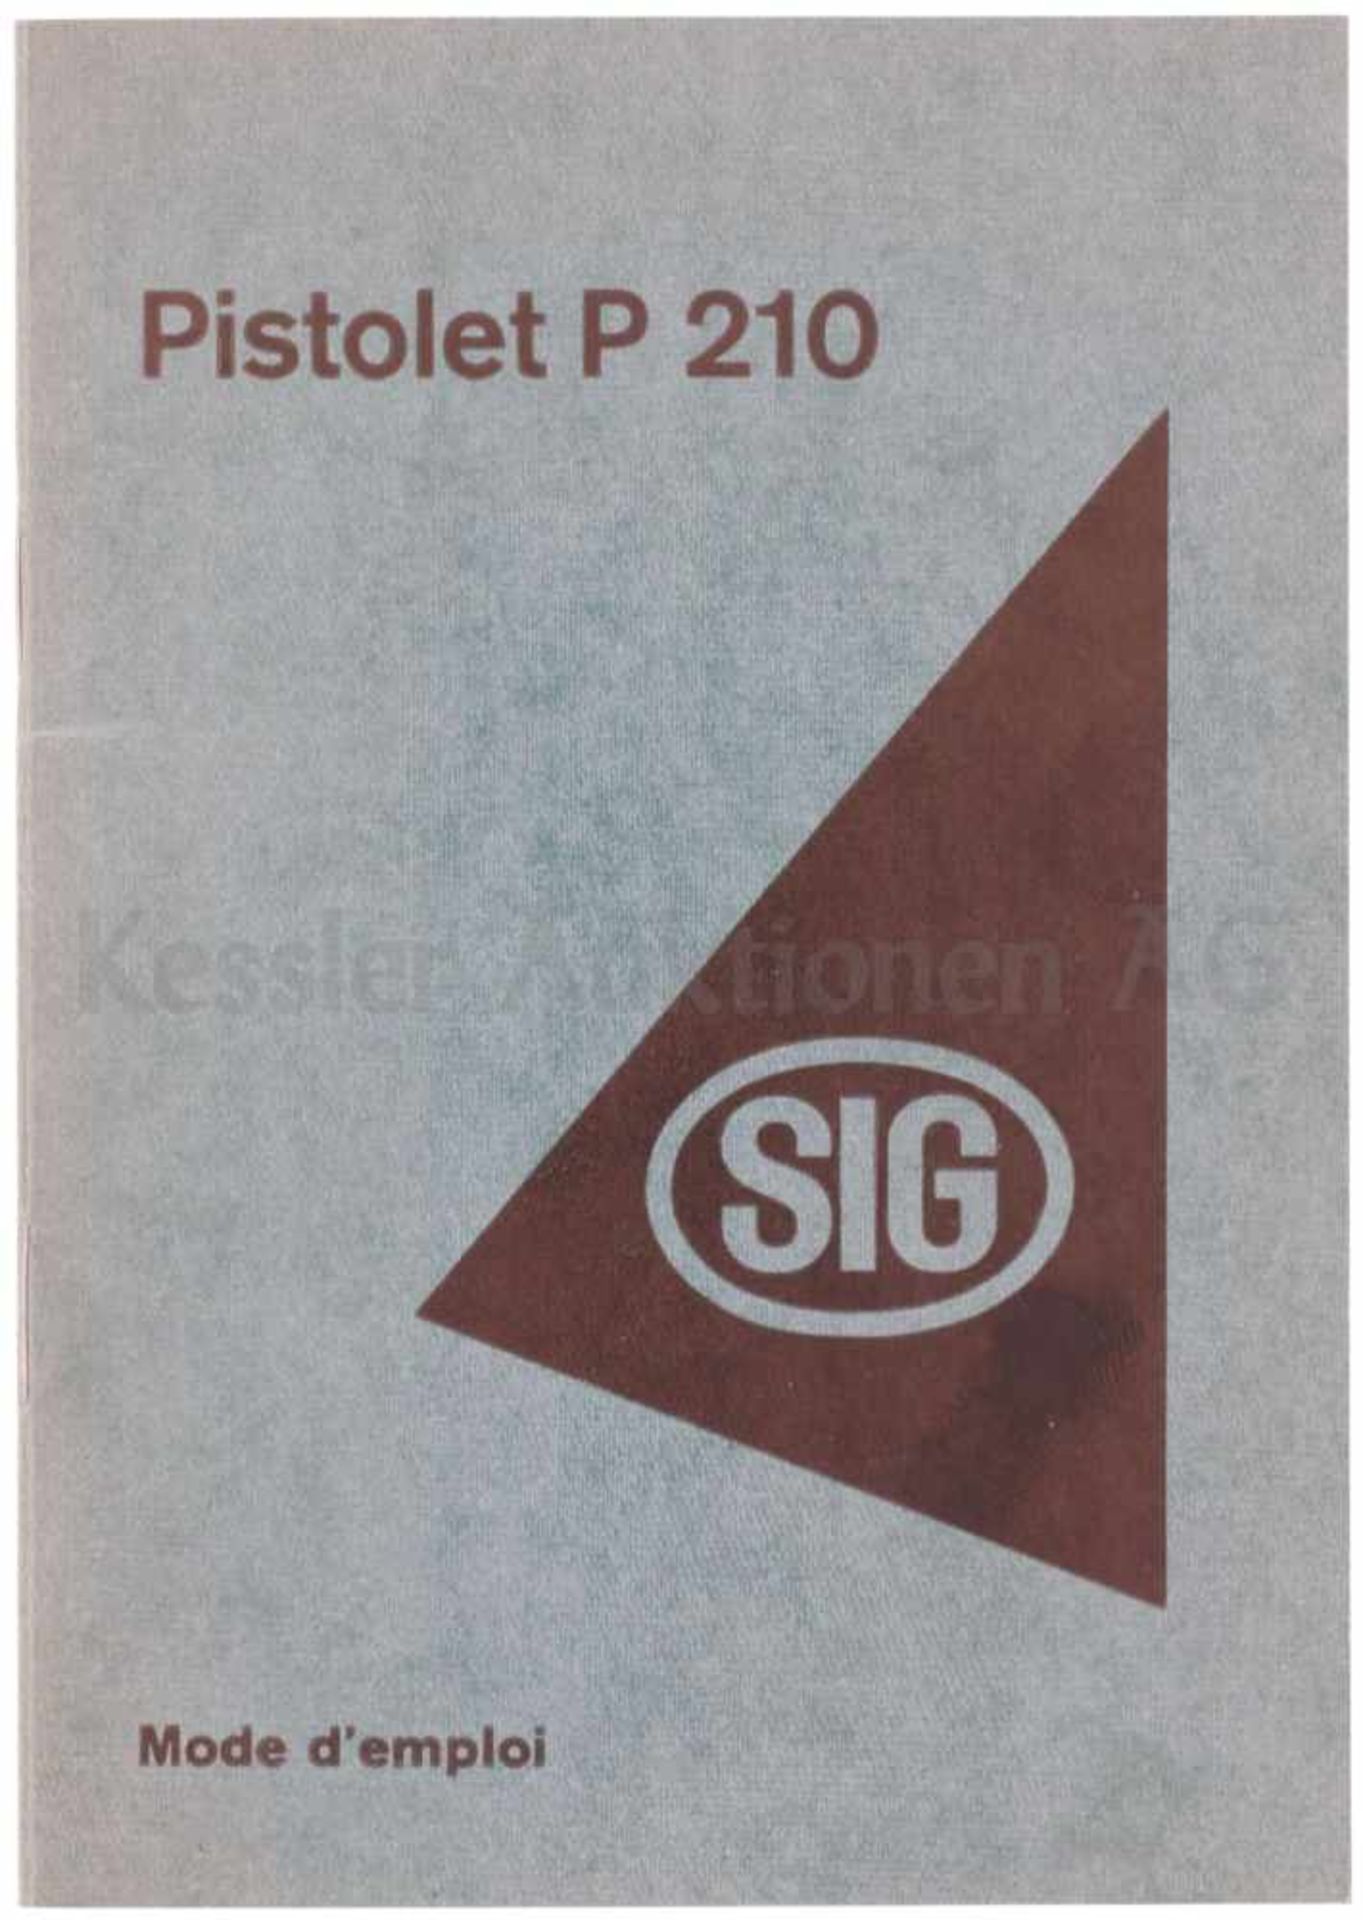 Bedienungsanleitung zur Pistole SIG 210 SIG-Bedienungsanleitung von 1950 in französicher Sprache.